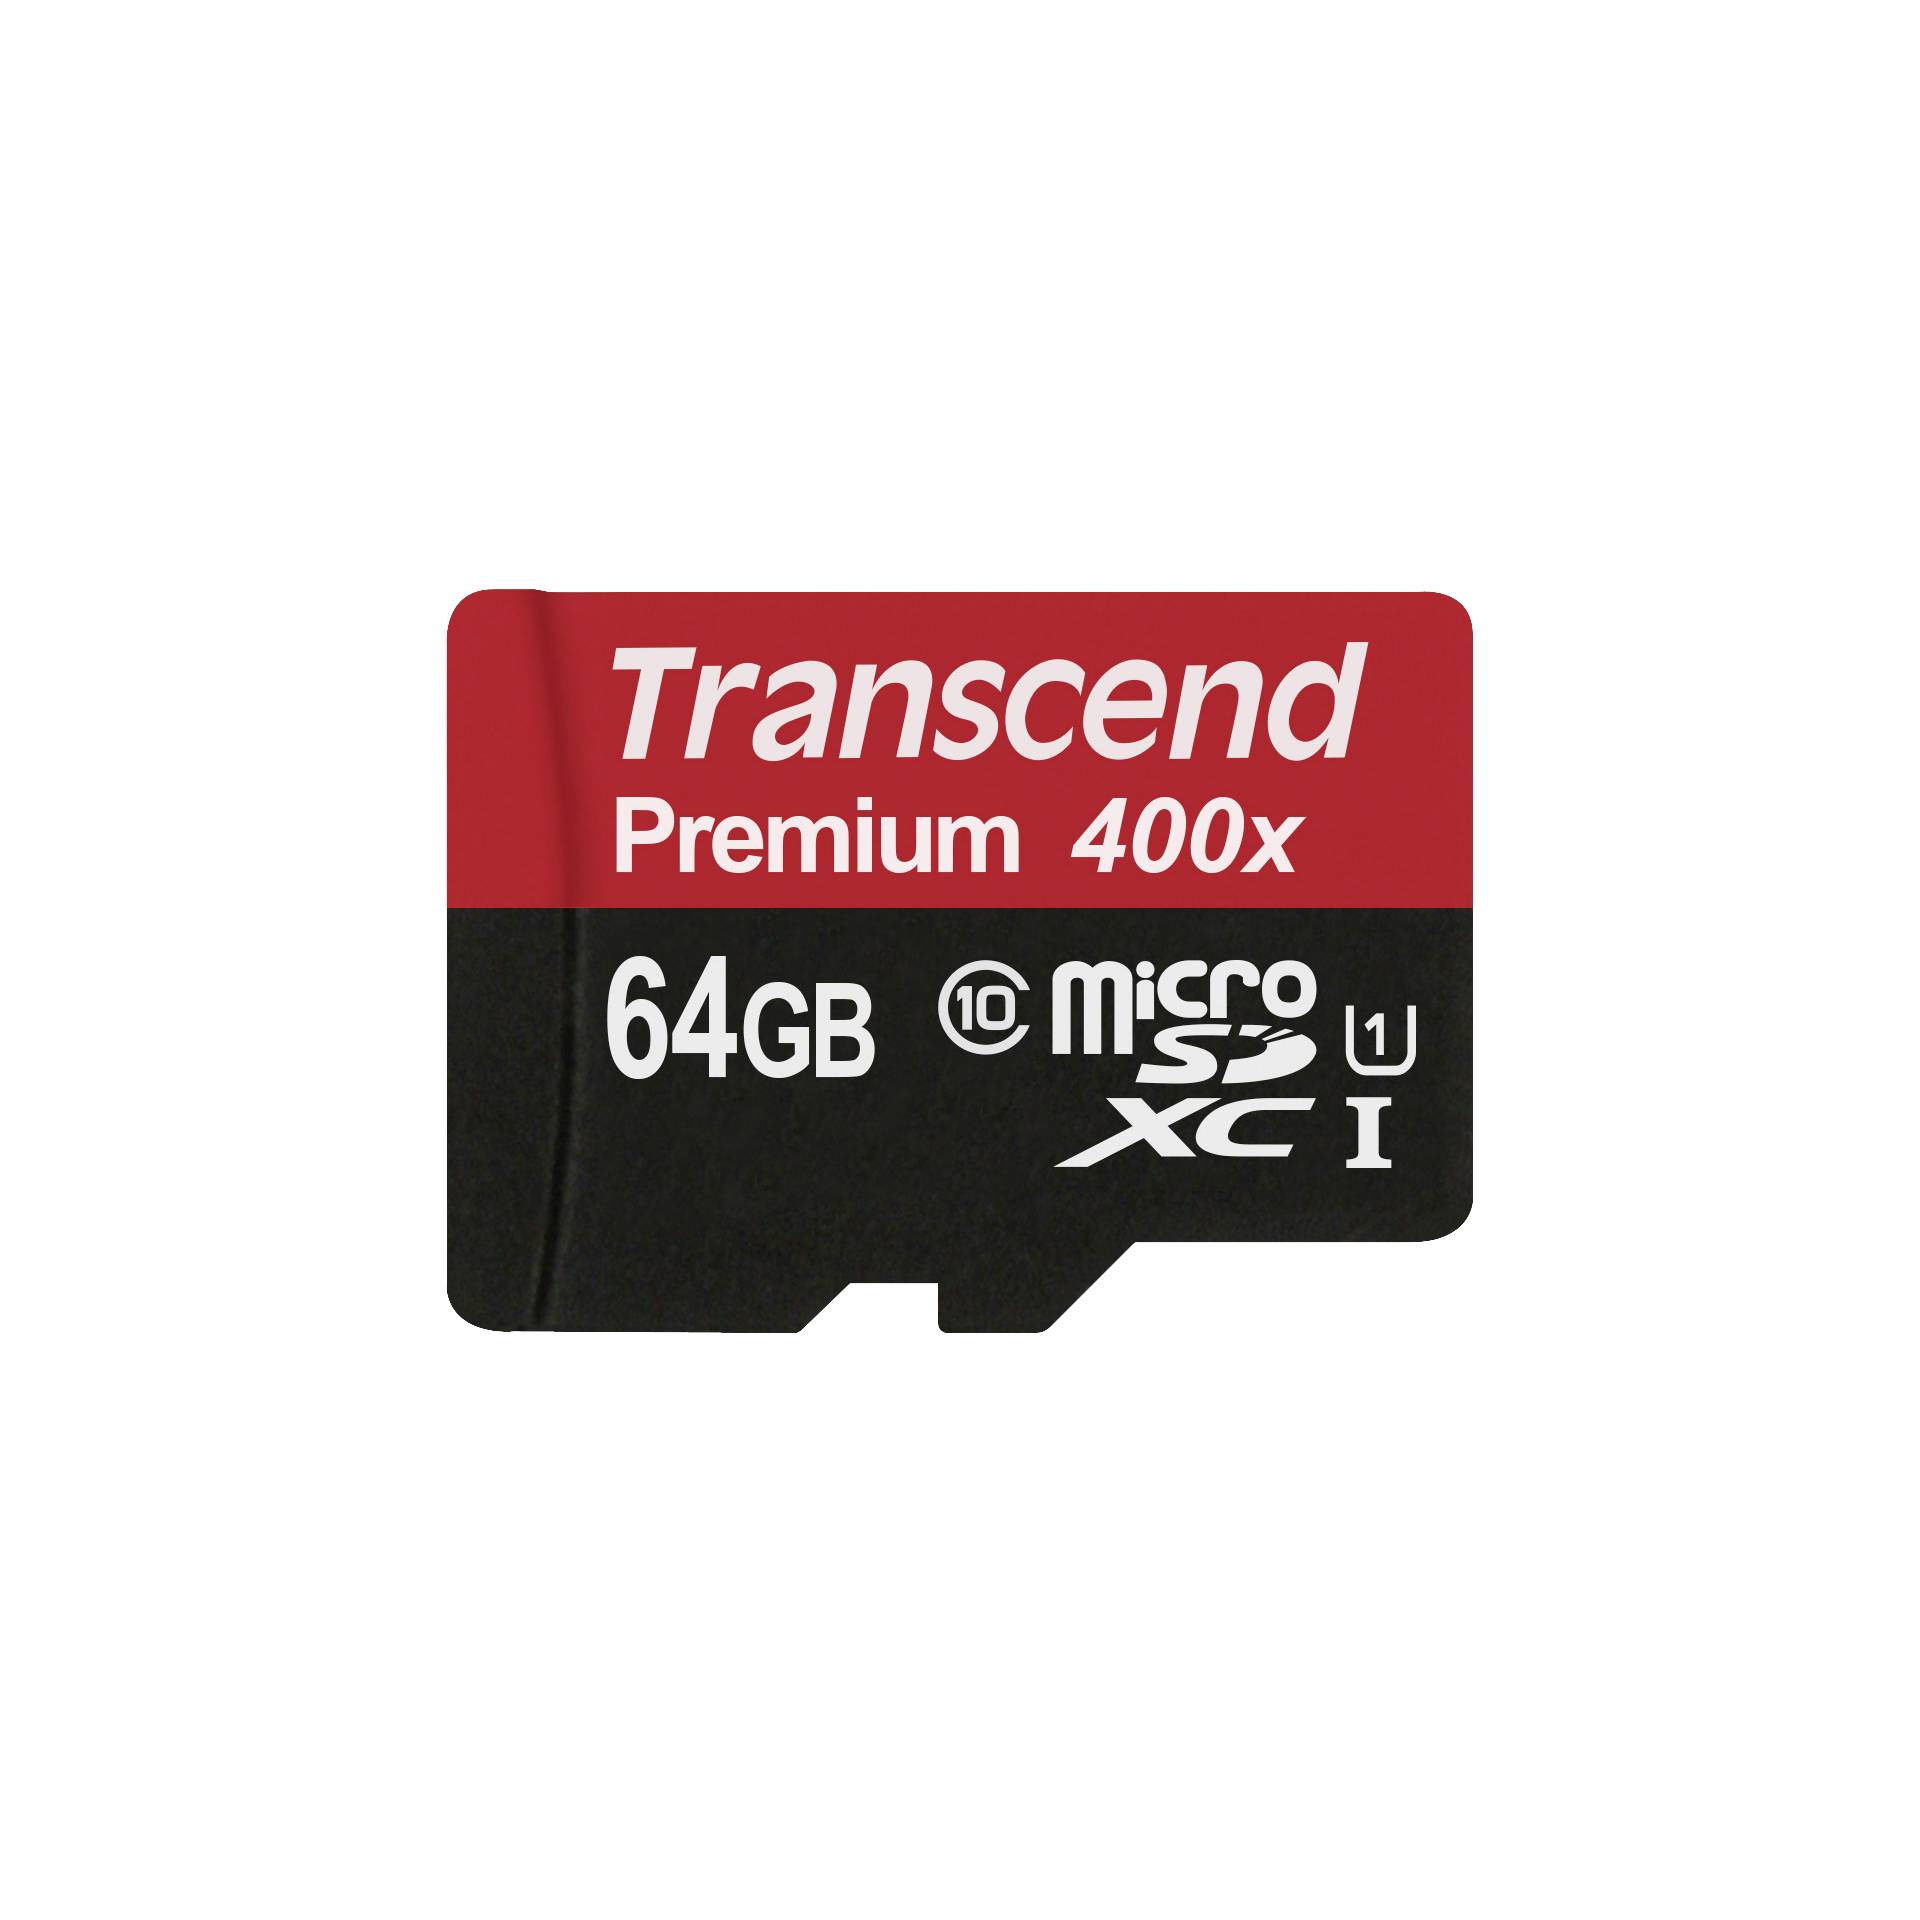 Transcend microSDXC 64GB Class 10 UHS-I U1 400x + SD adattat